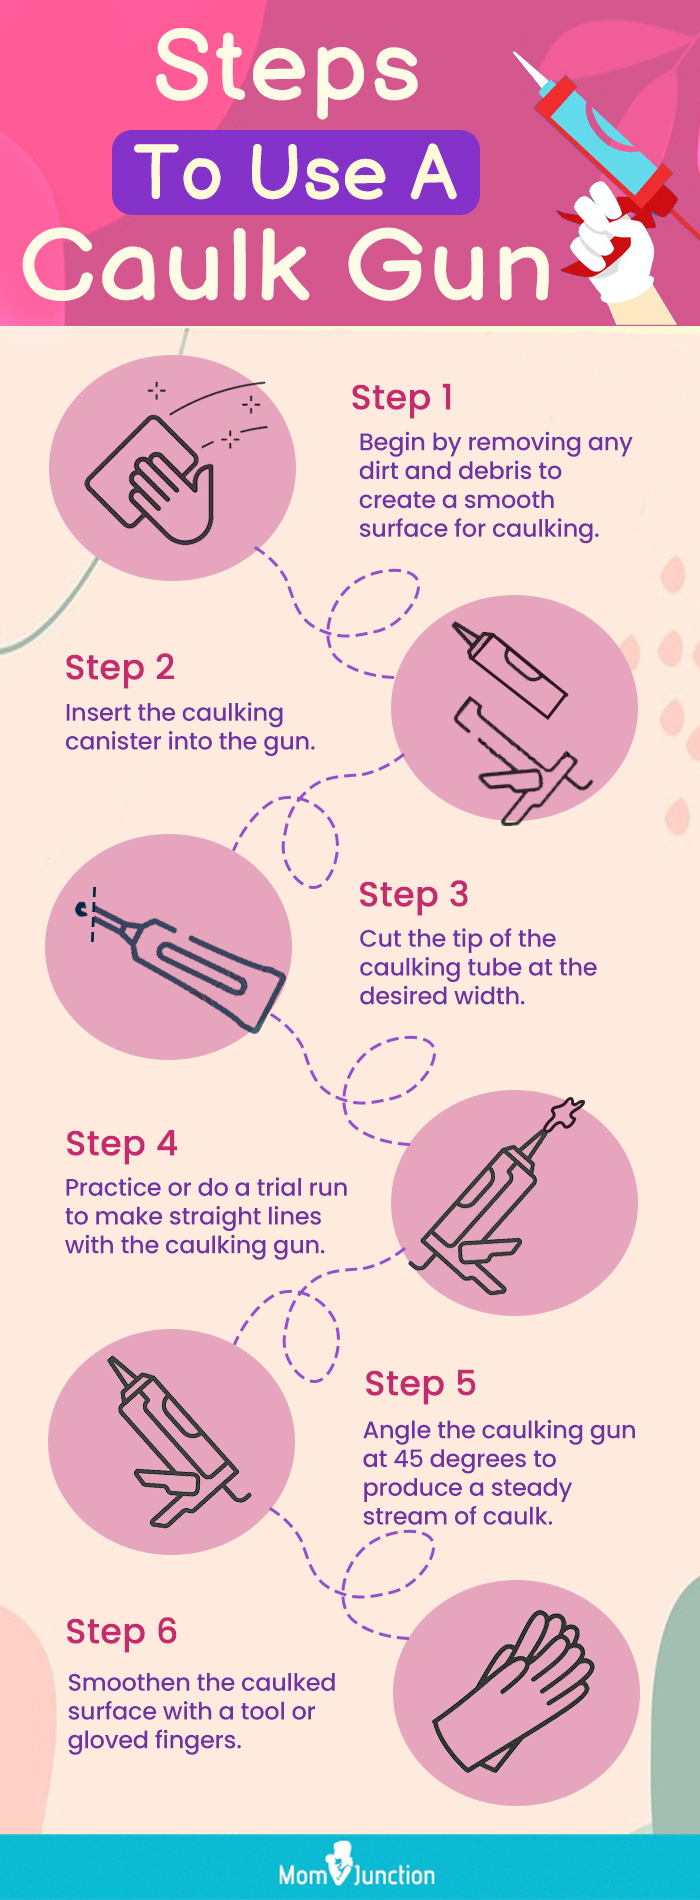 Steps To Use A Caulk Gun (infographic)